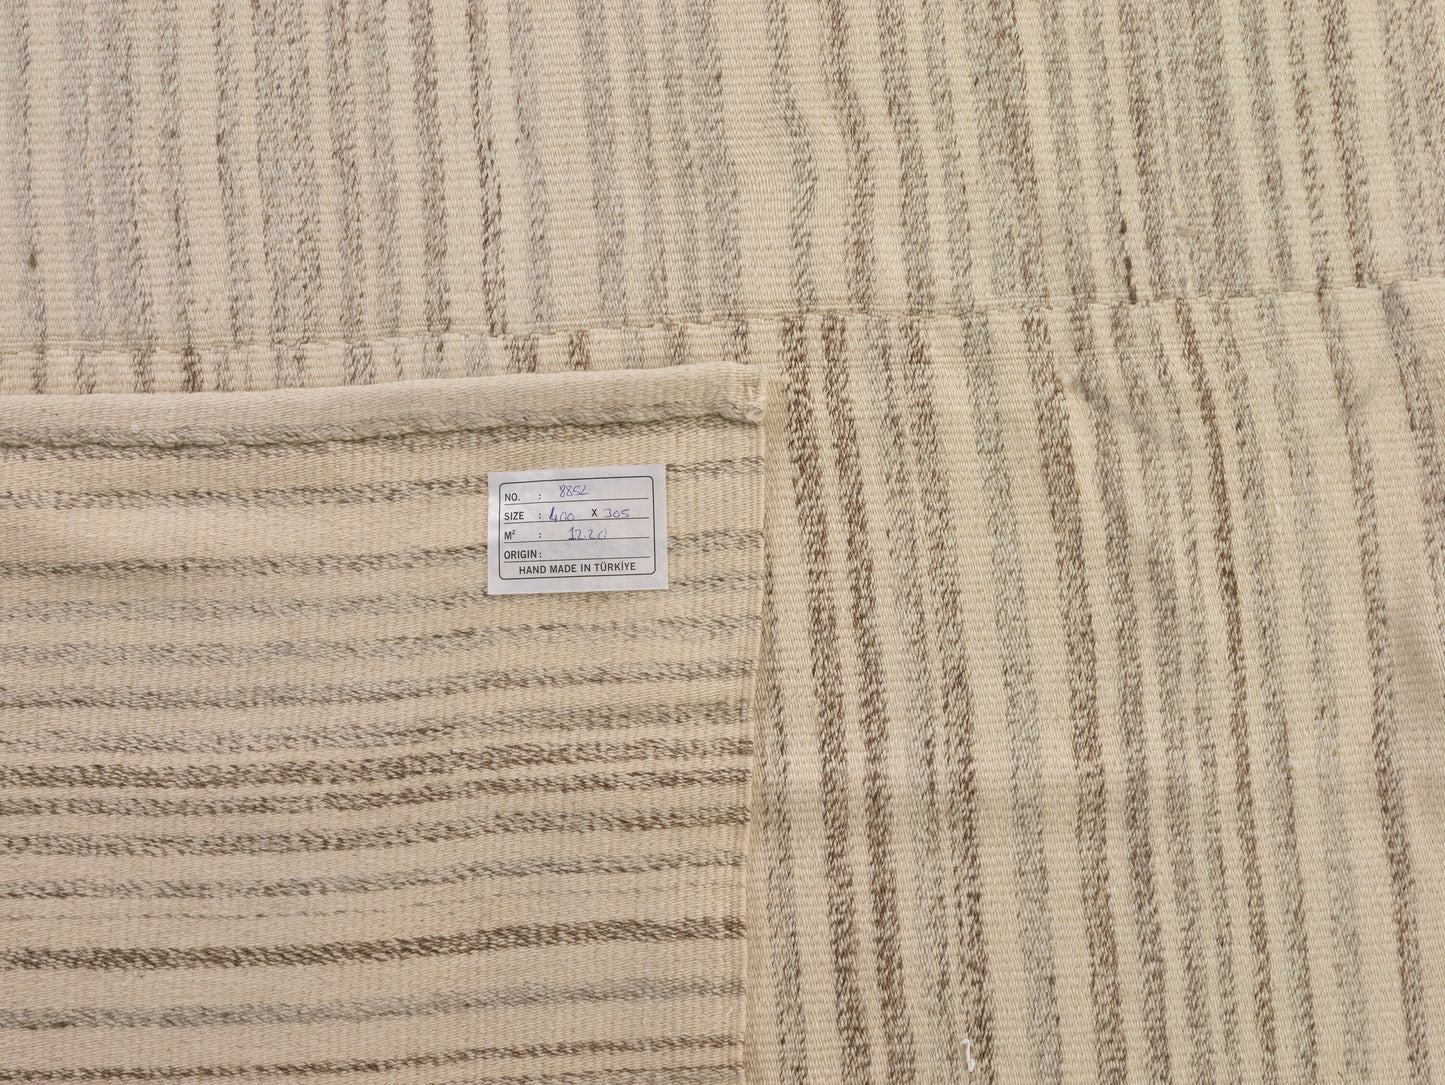 Decorative Area Vintage Turkish Beige 10x13 Soft Kilim rug,Handmade Large Kilim rug Rug for bedroom Gift for Wedding 8230